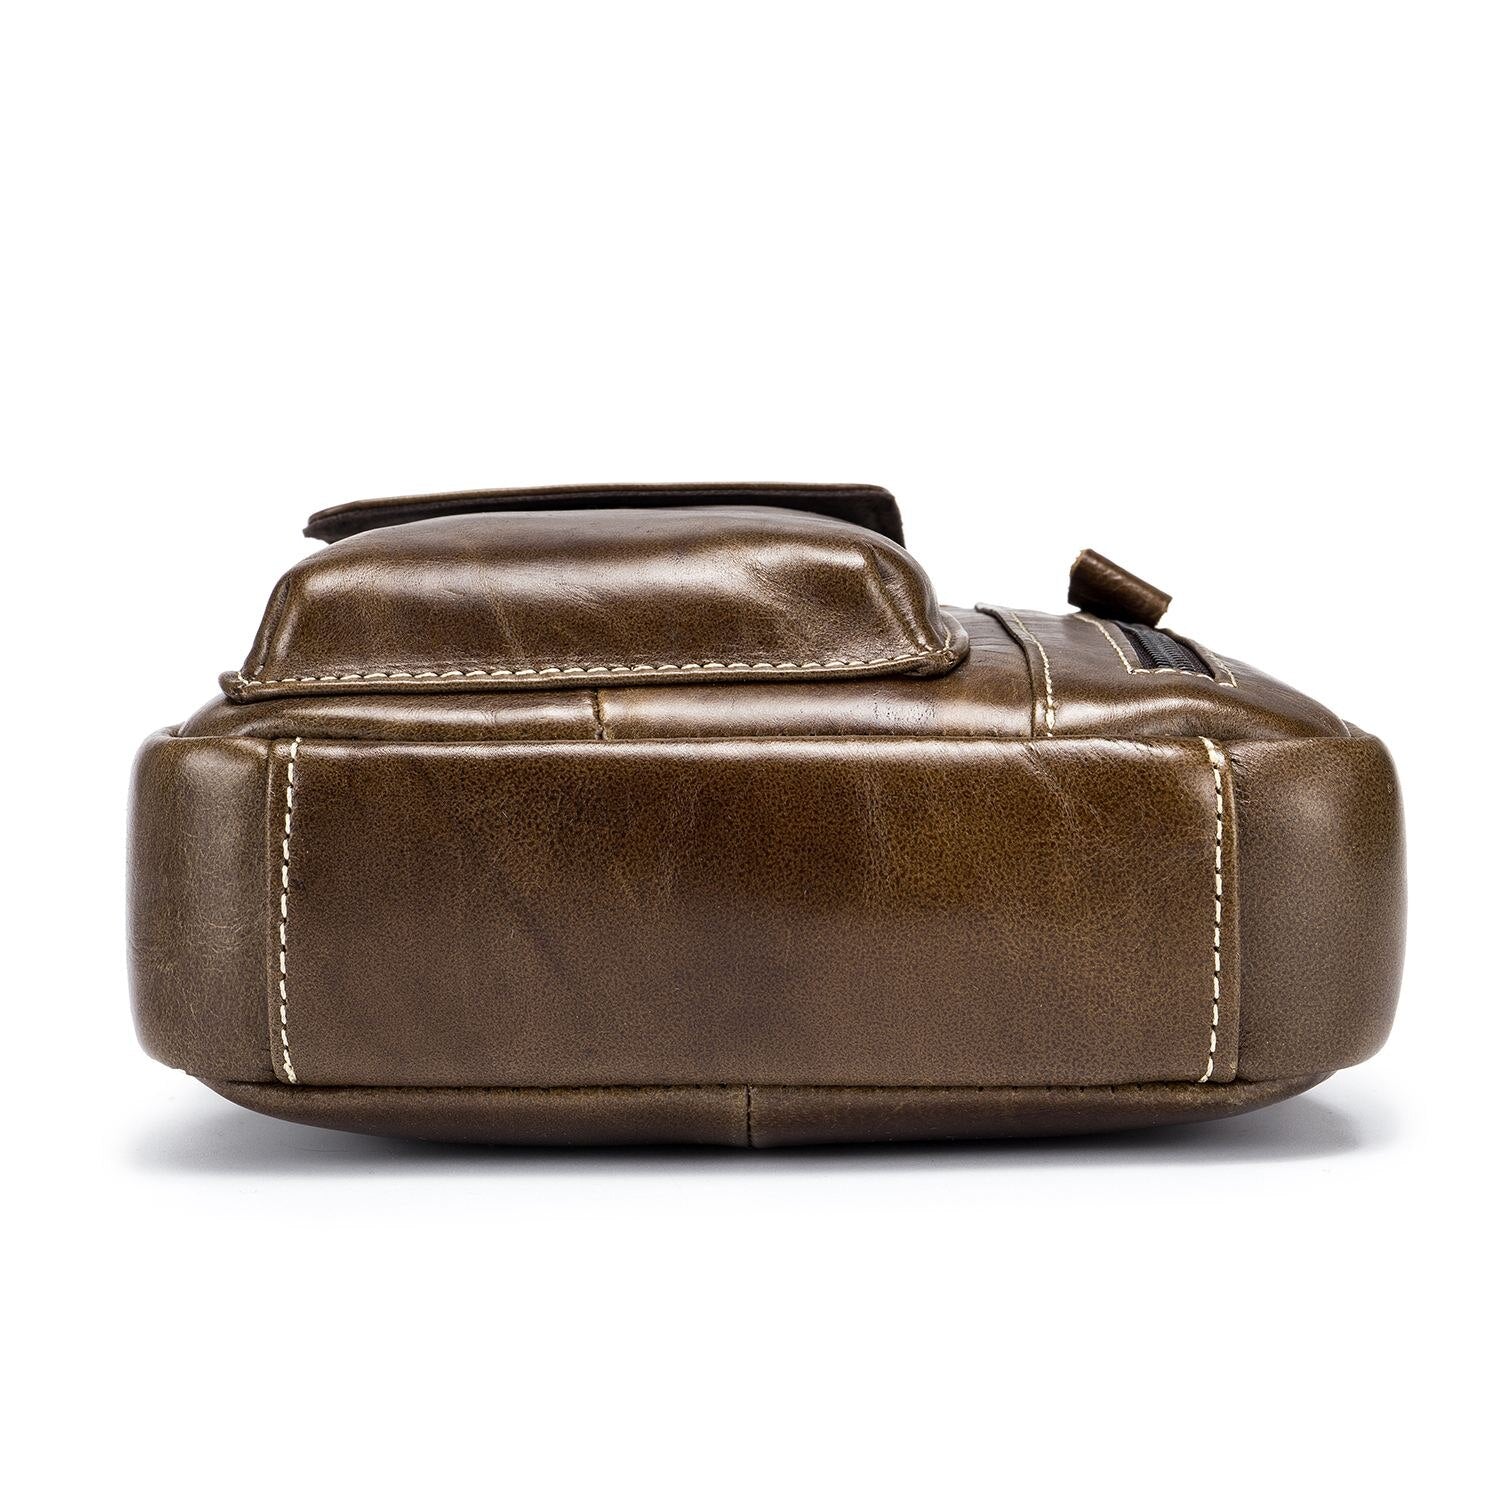 2 Color Bullcaptain Classic Brand Genuine Leather Business Messenger Bag Vintage Crossbody Bag For Men Casual Shoulder Bag - ebowsos